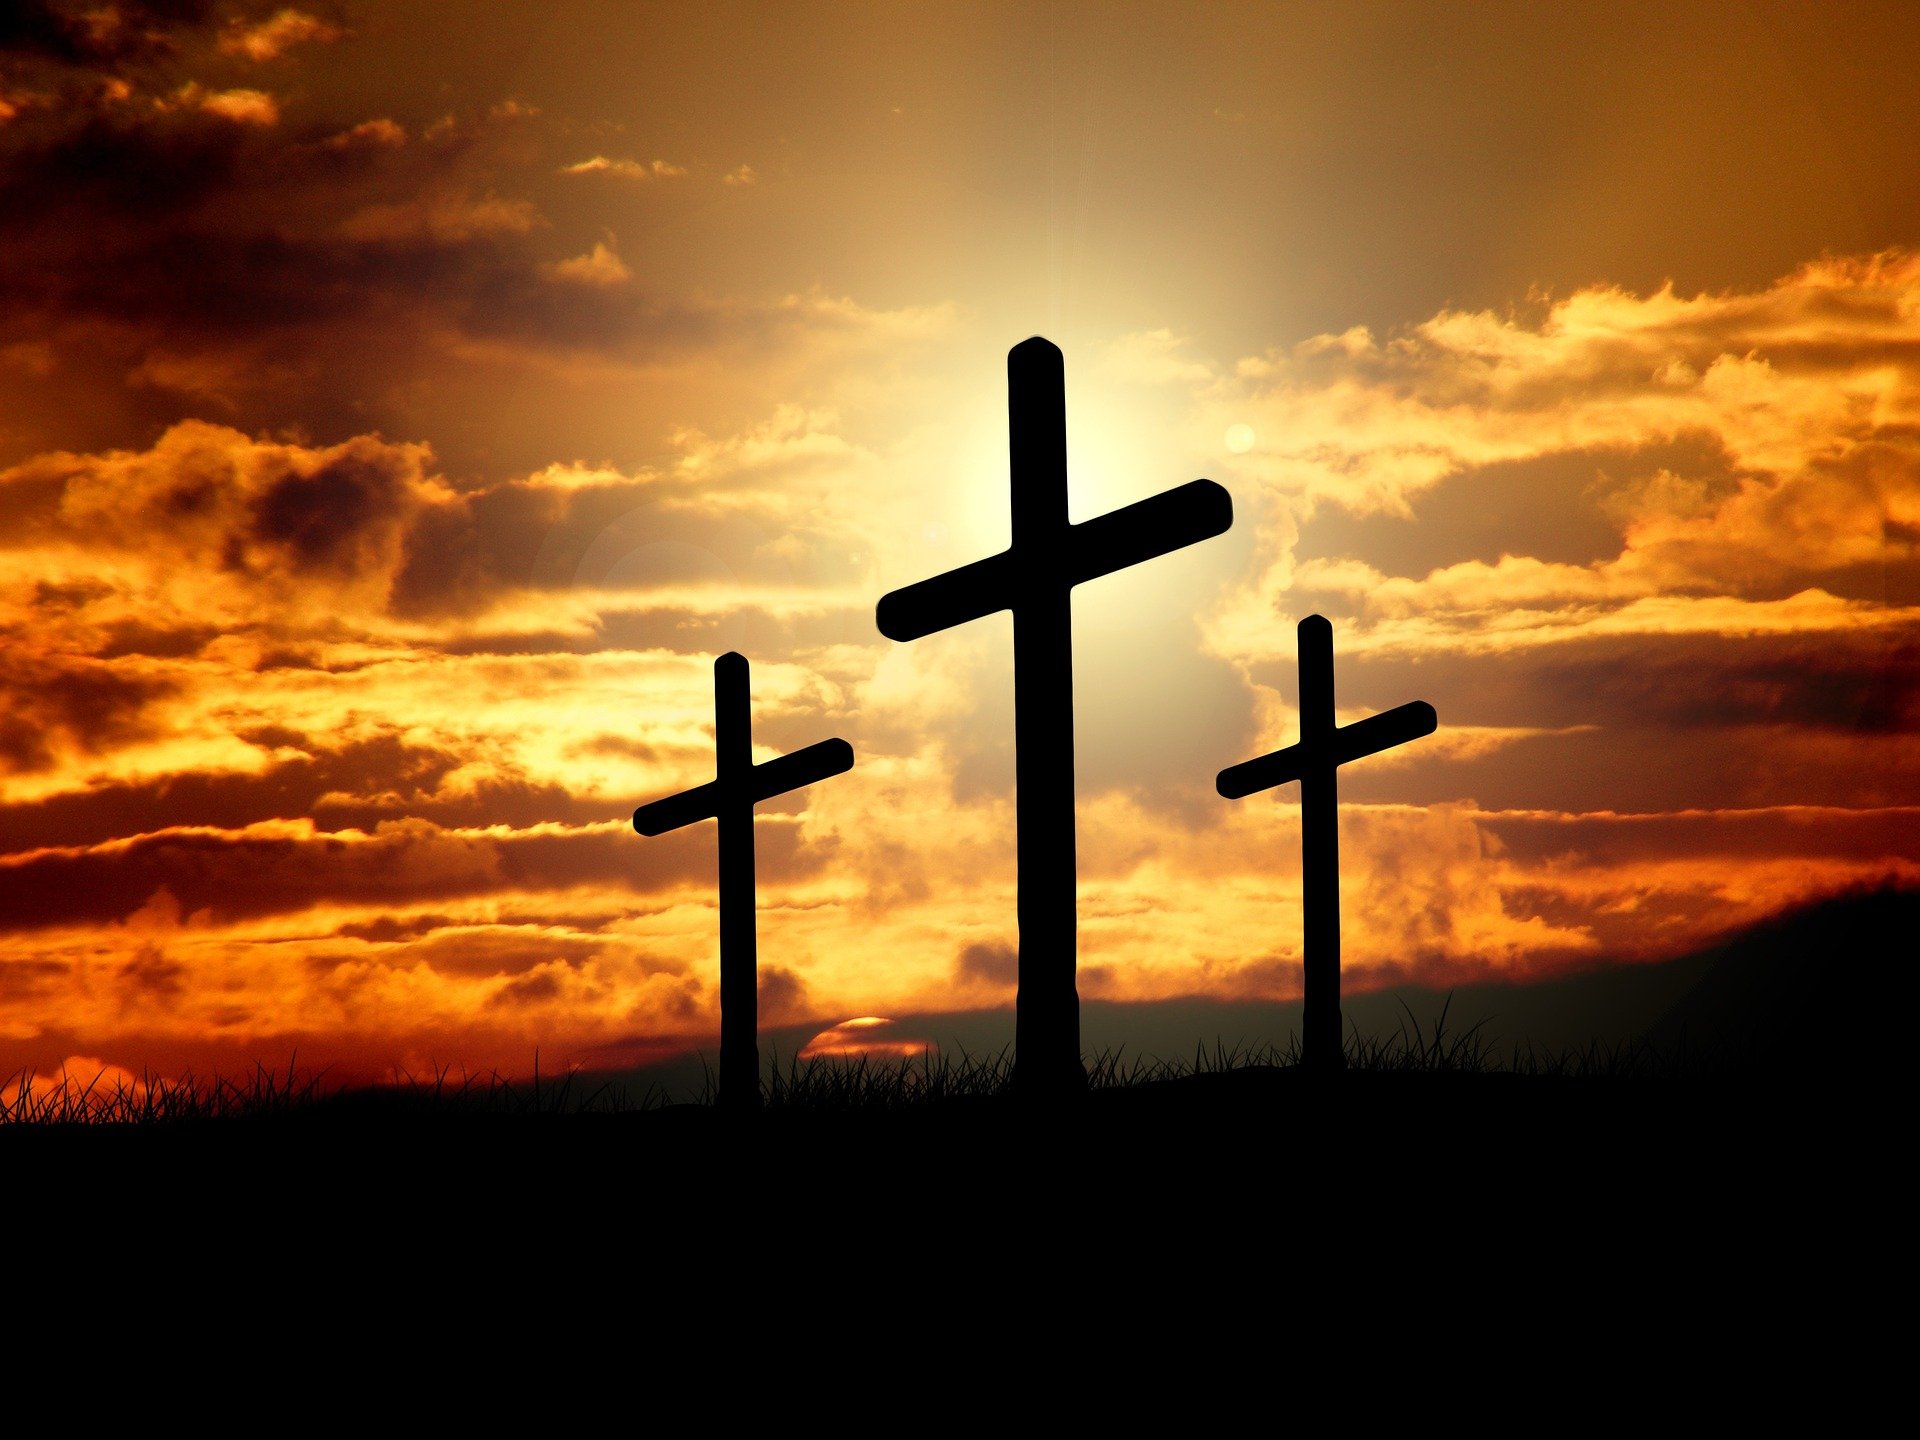 Drei Kreuze in Silhouette vor einem Sonnenuntergang, eines davon hervorgehoben. Symbolisch für den christlichen Glauben und die Opferbereitschaft von Jesus Christus.